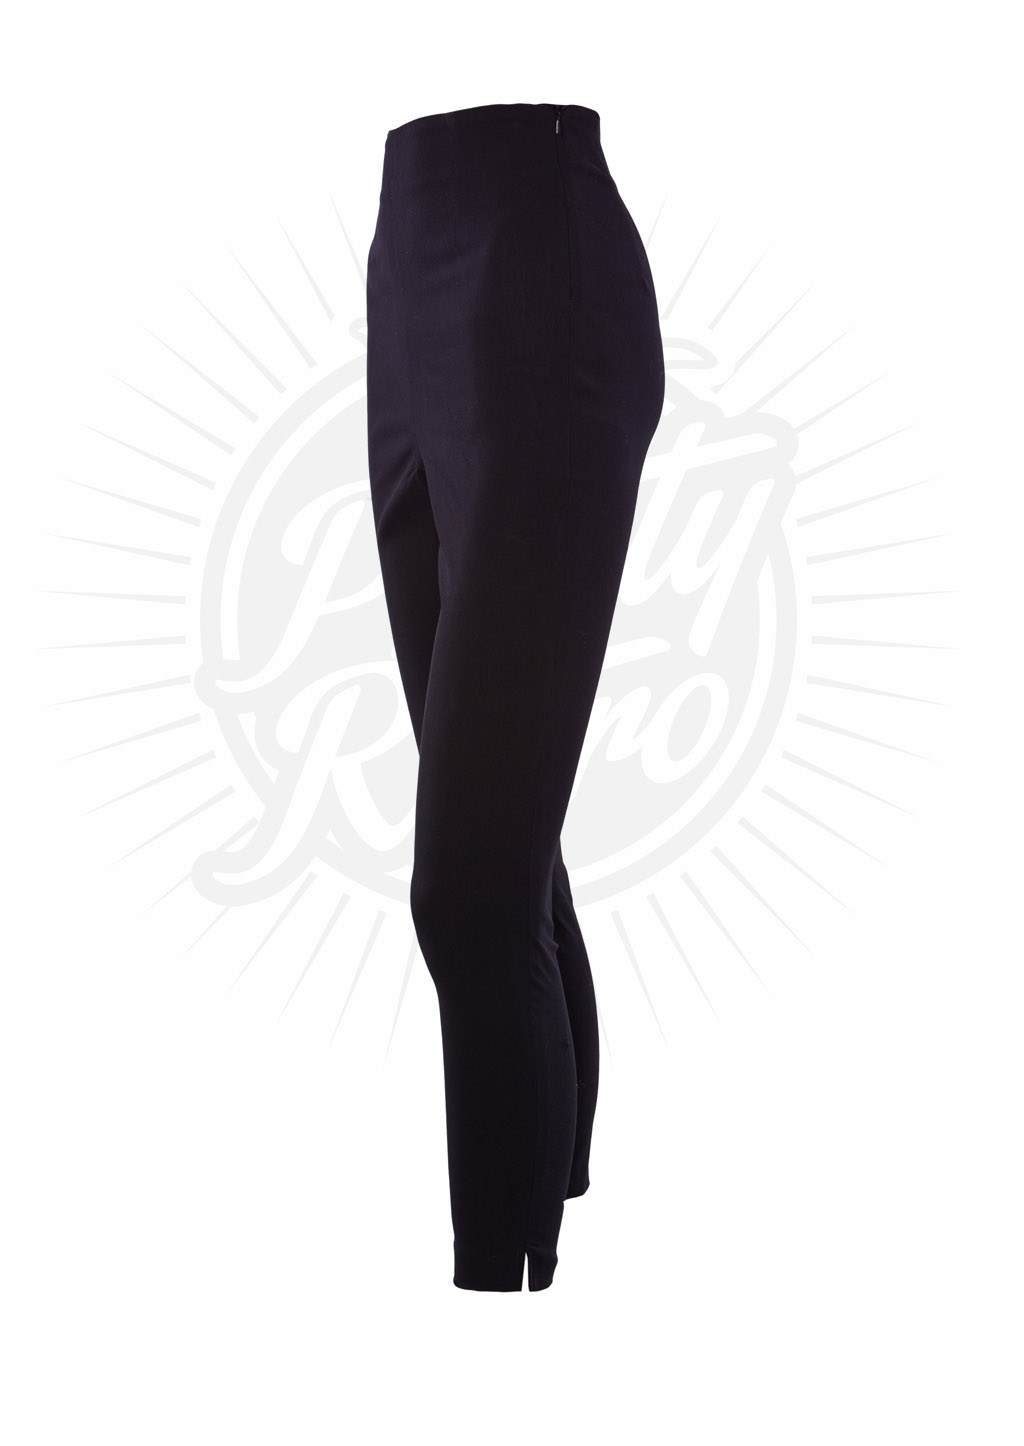 Black Vintage 1950s style lace up Capri pants XS to 2XL